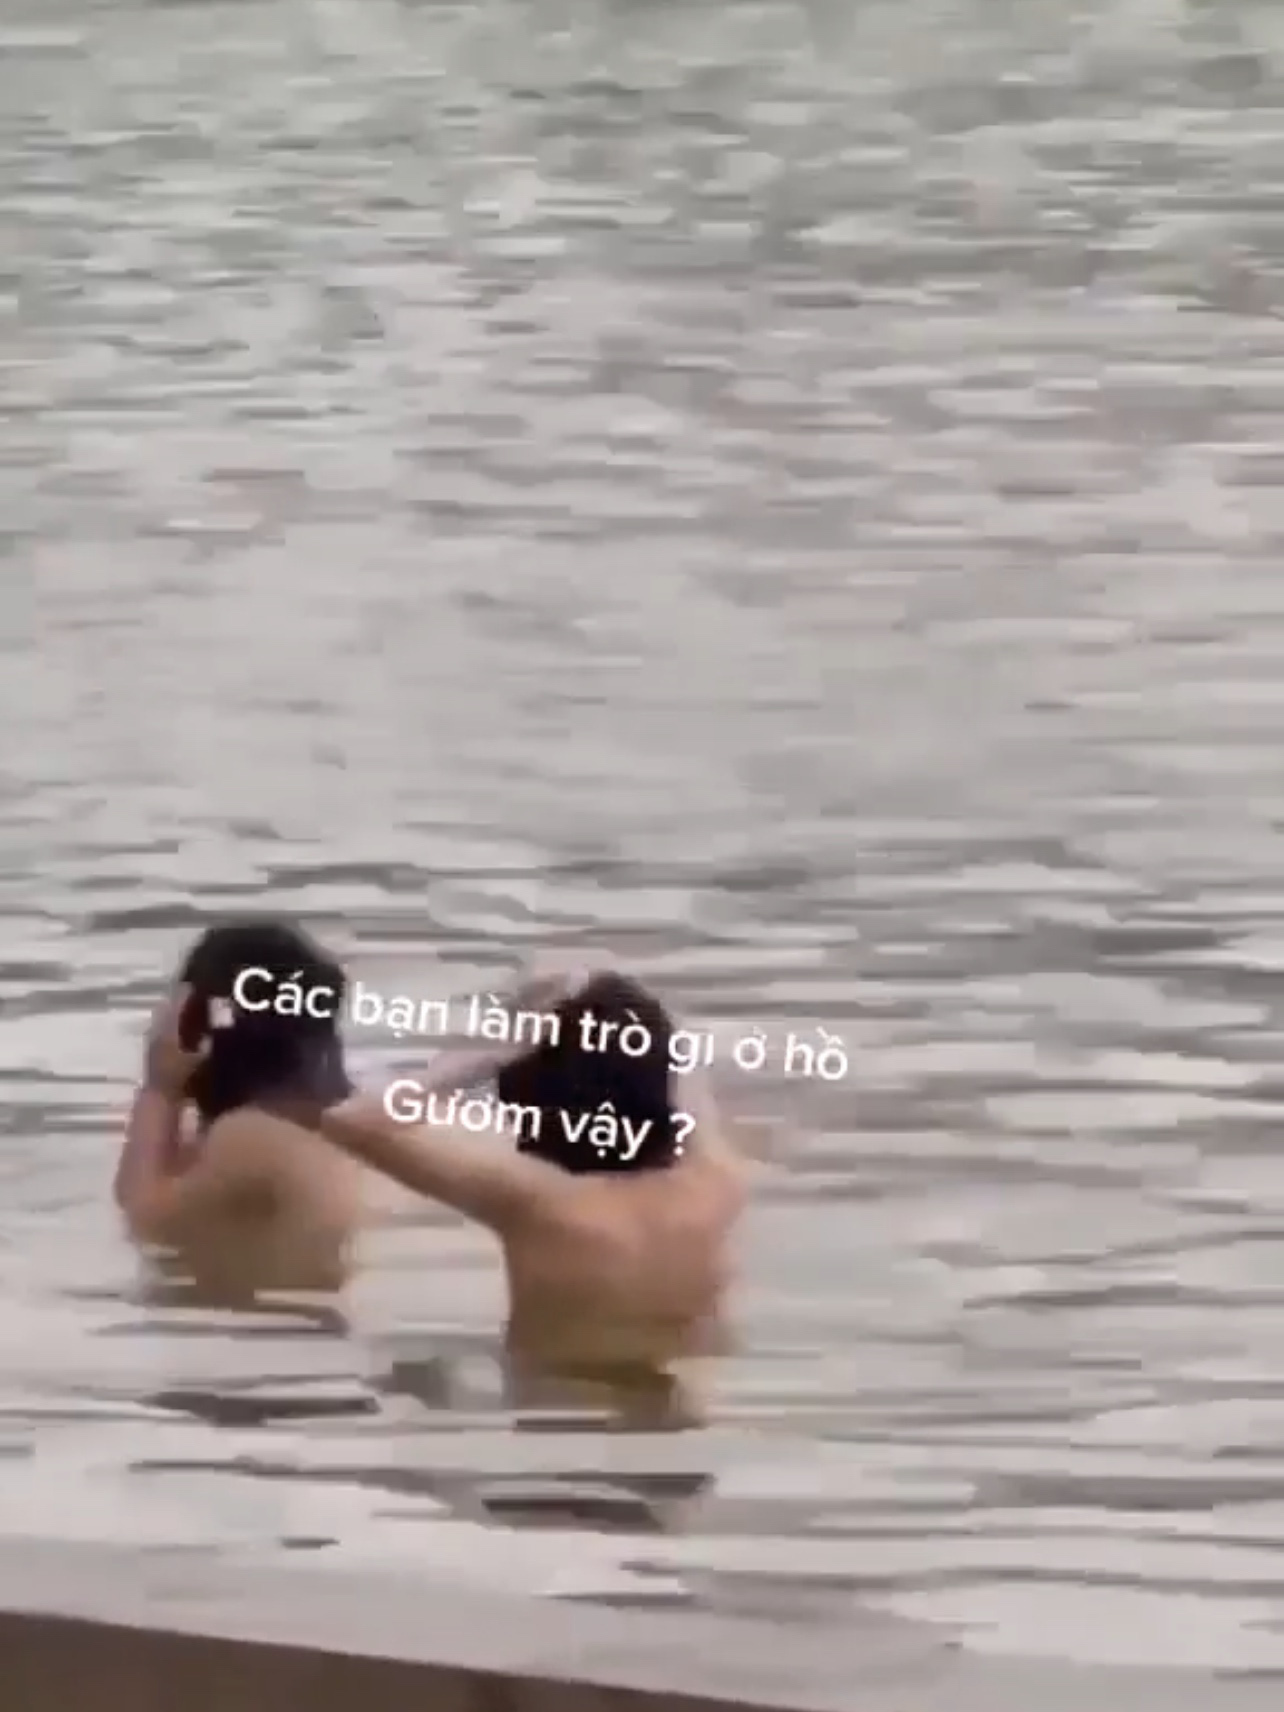 Hanoi works to verify video of women bathing topless in Hoan Kiem Lake